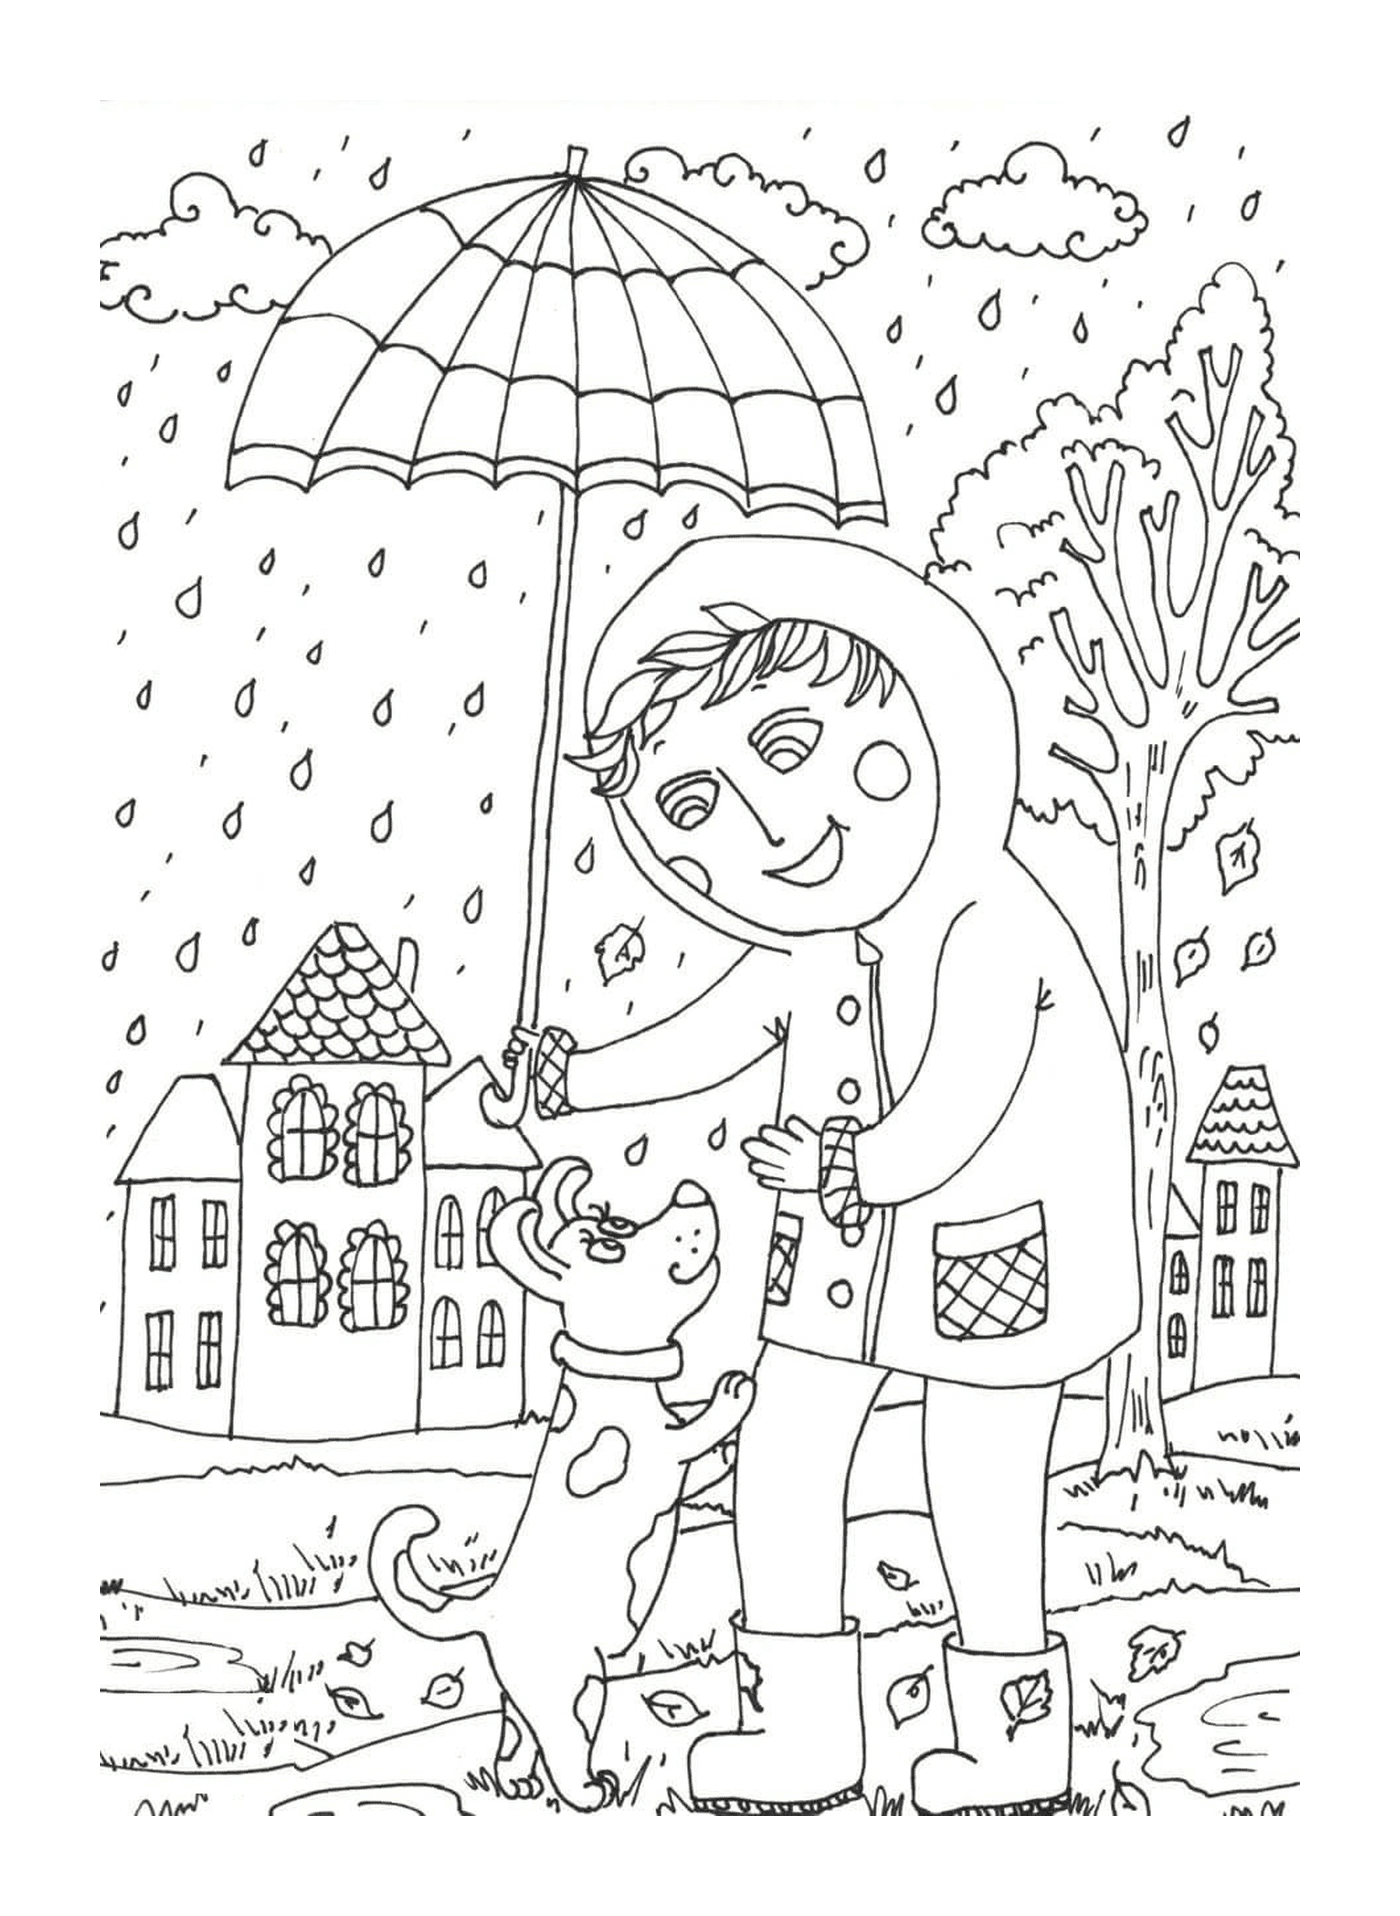  Ein Kind, das einen Regenschirm über einem Hund hält 